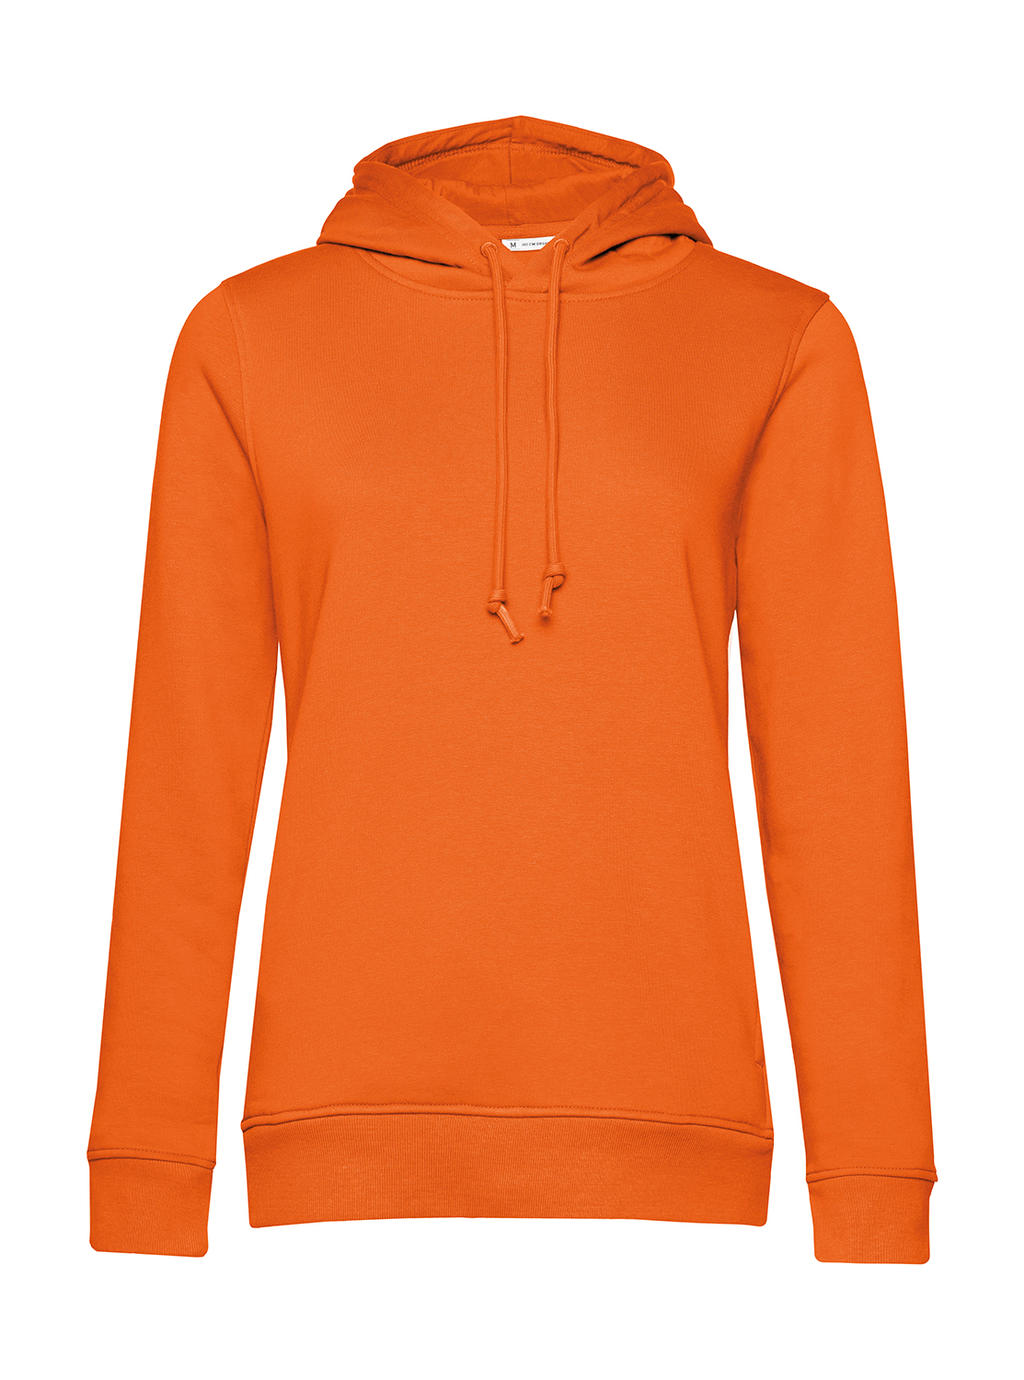 Mikina Organic Inspire Hooded /women - pure orange